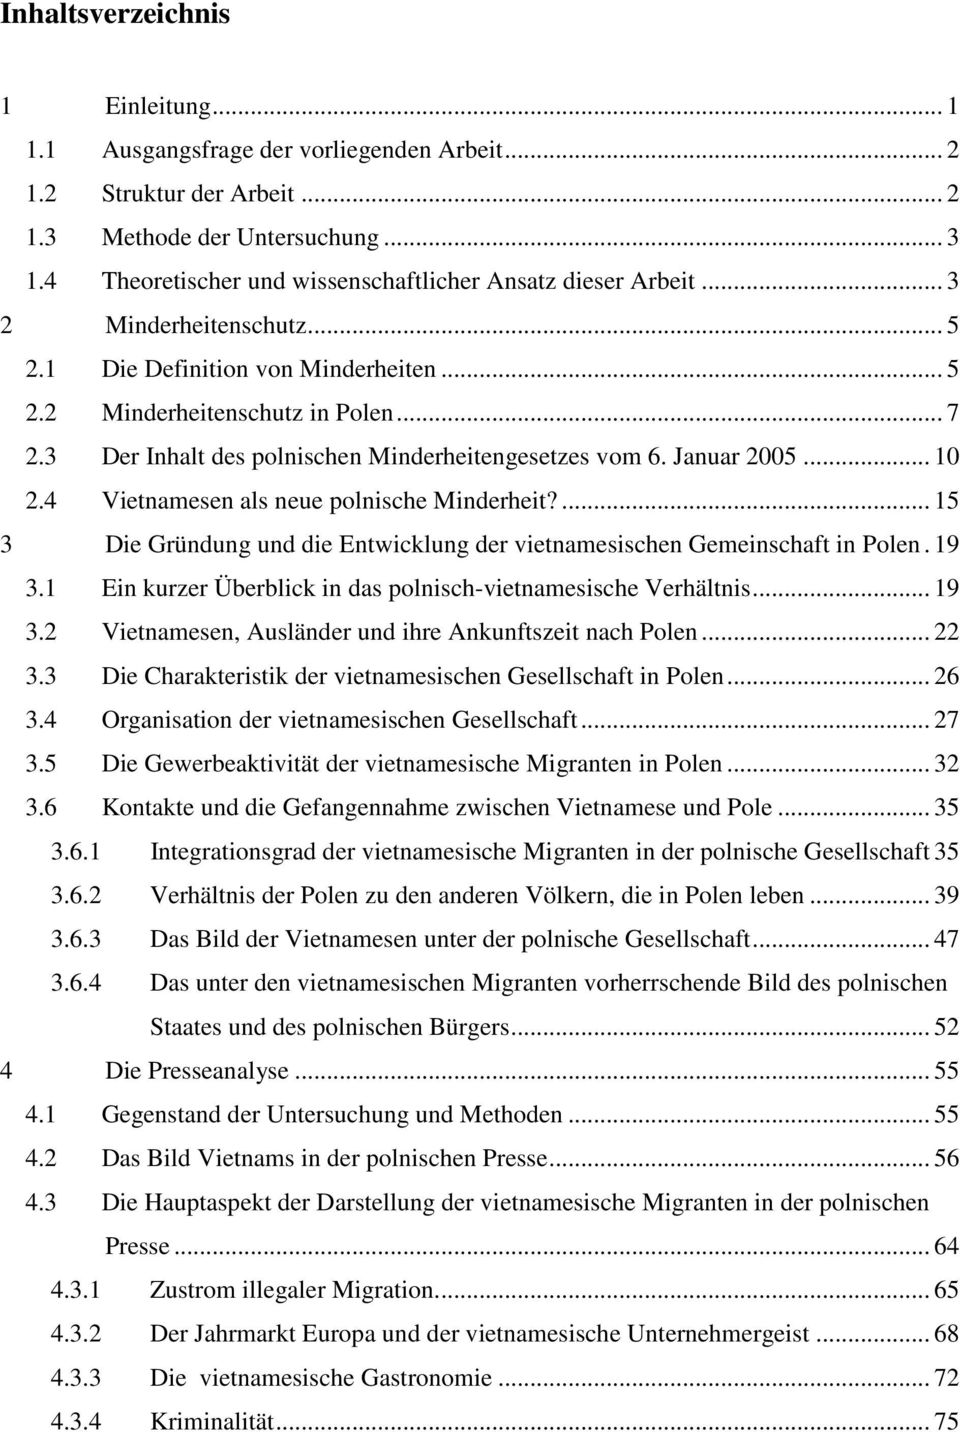 3 Der Inhalt des polnischen Minderheitengesetzes vom 6. Januar 2005... 10 2.4 Vietnamesen als neue polnische Minderheit?